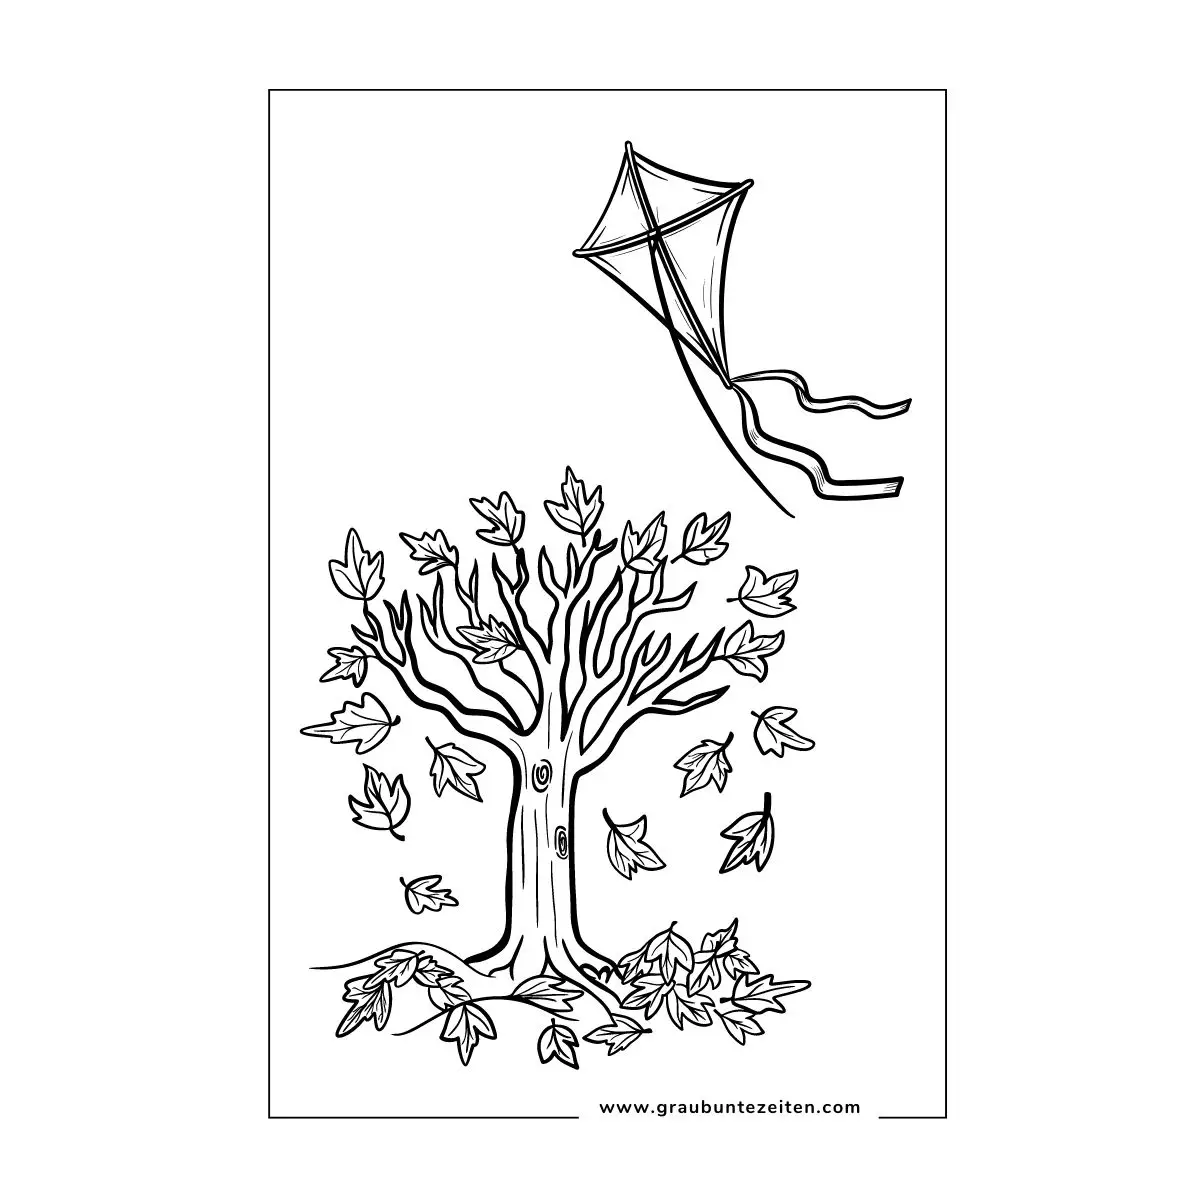 Ein Drache zum Ausmalen fliegt über einen Baum mit Herbstblättern.